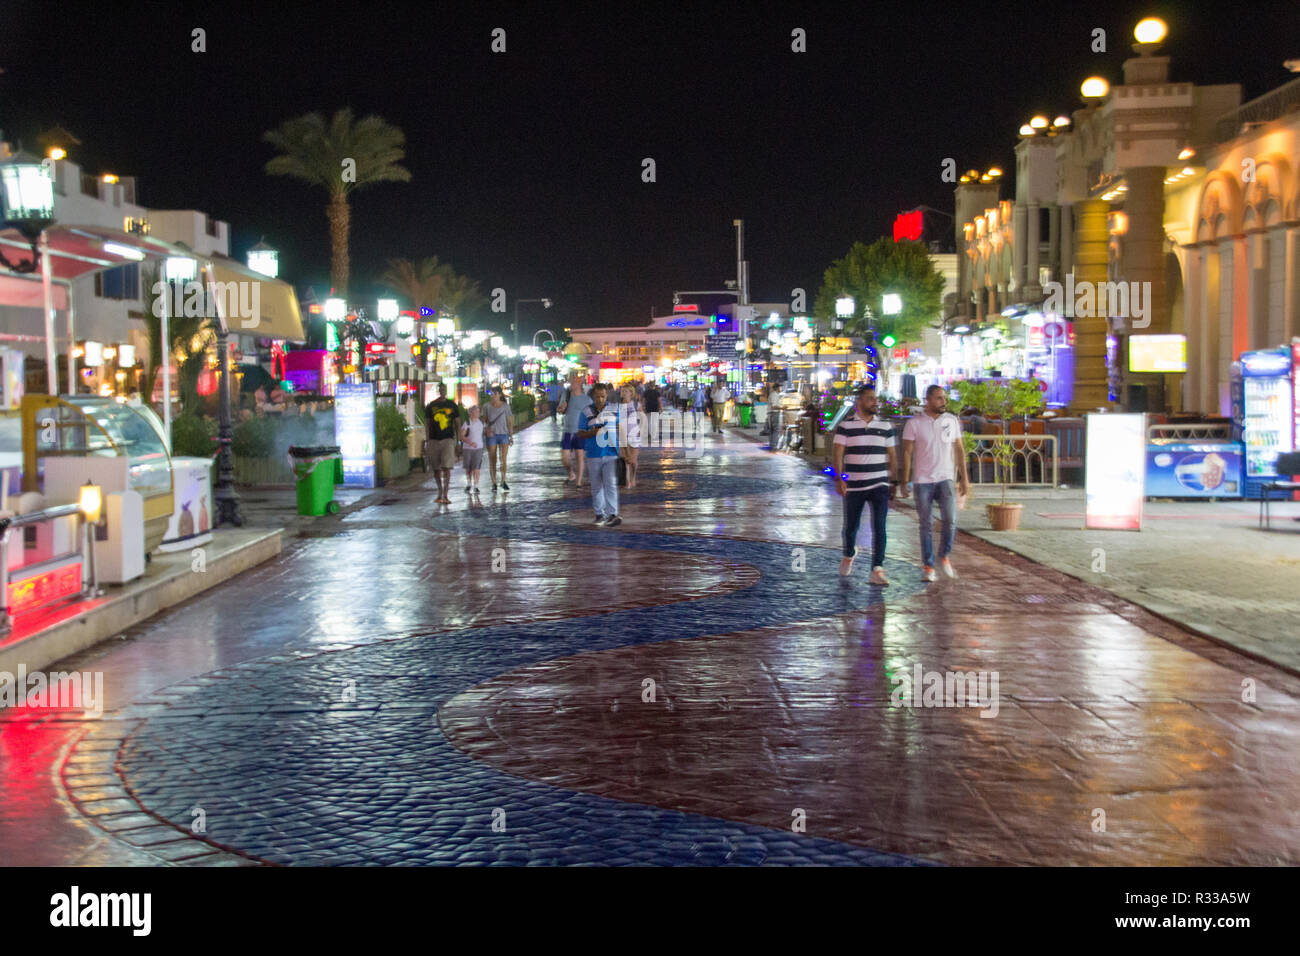 El-Shaikh Sharm, Ägypten - November 2, 2018: - Foto für Ne'ema Bay in der ägyptischen Stadt Scharm el-Scheich, Kasinos und Restaurants und sho Stockfoto